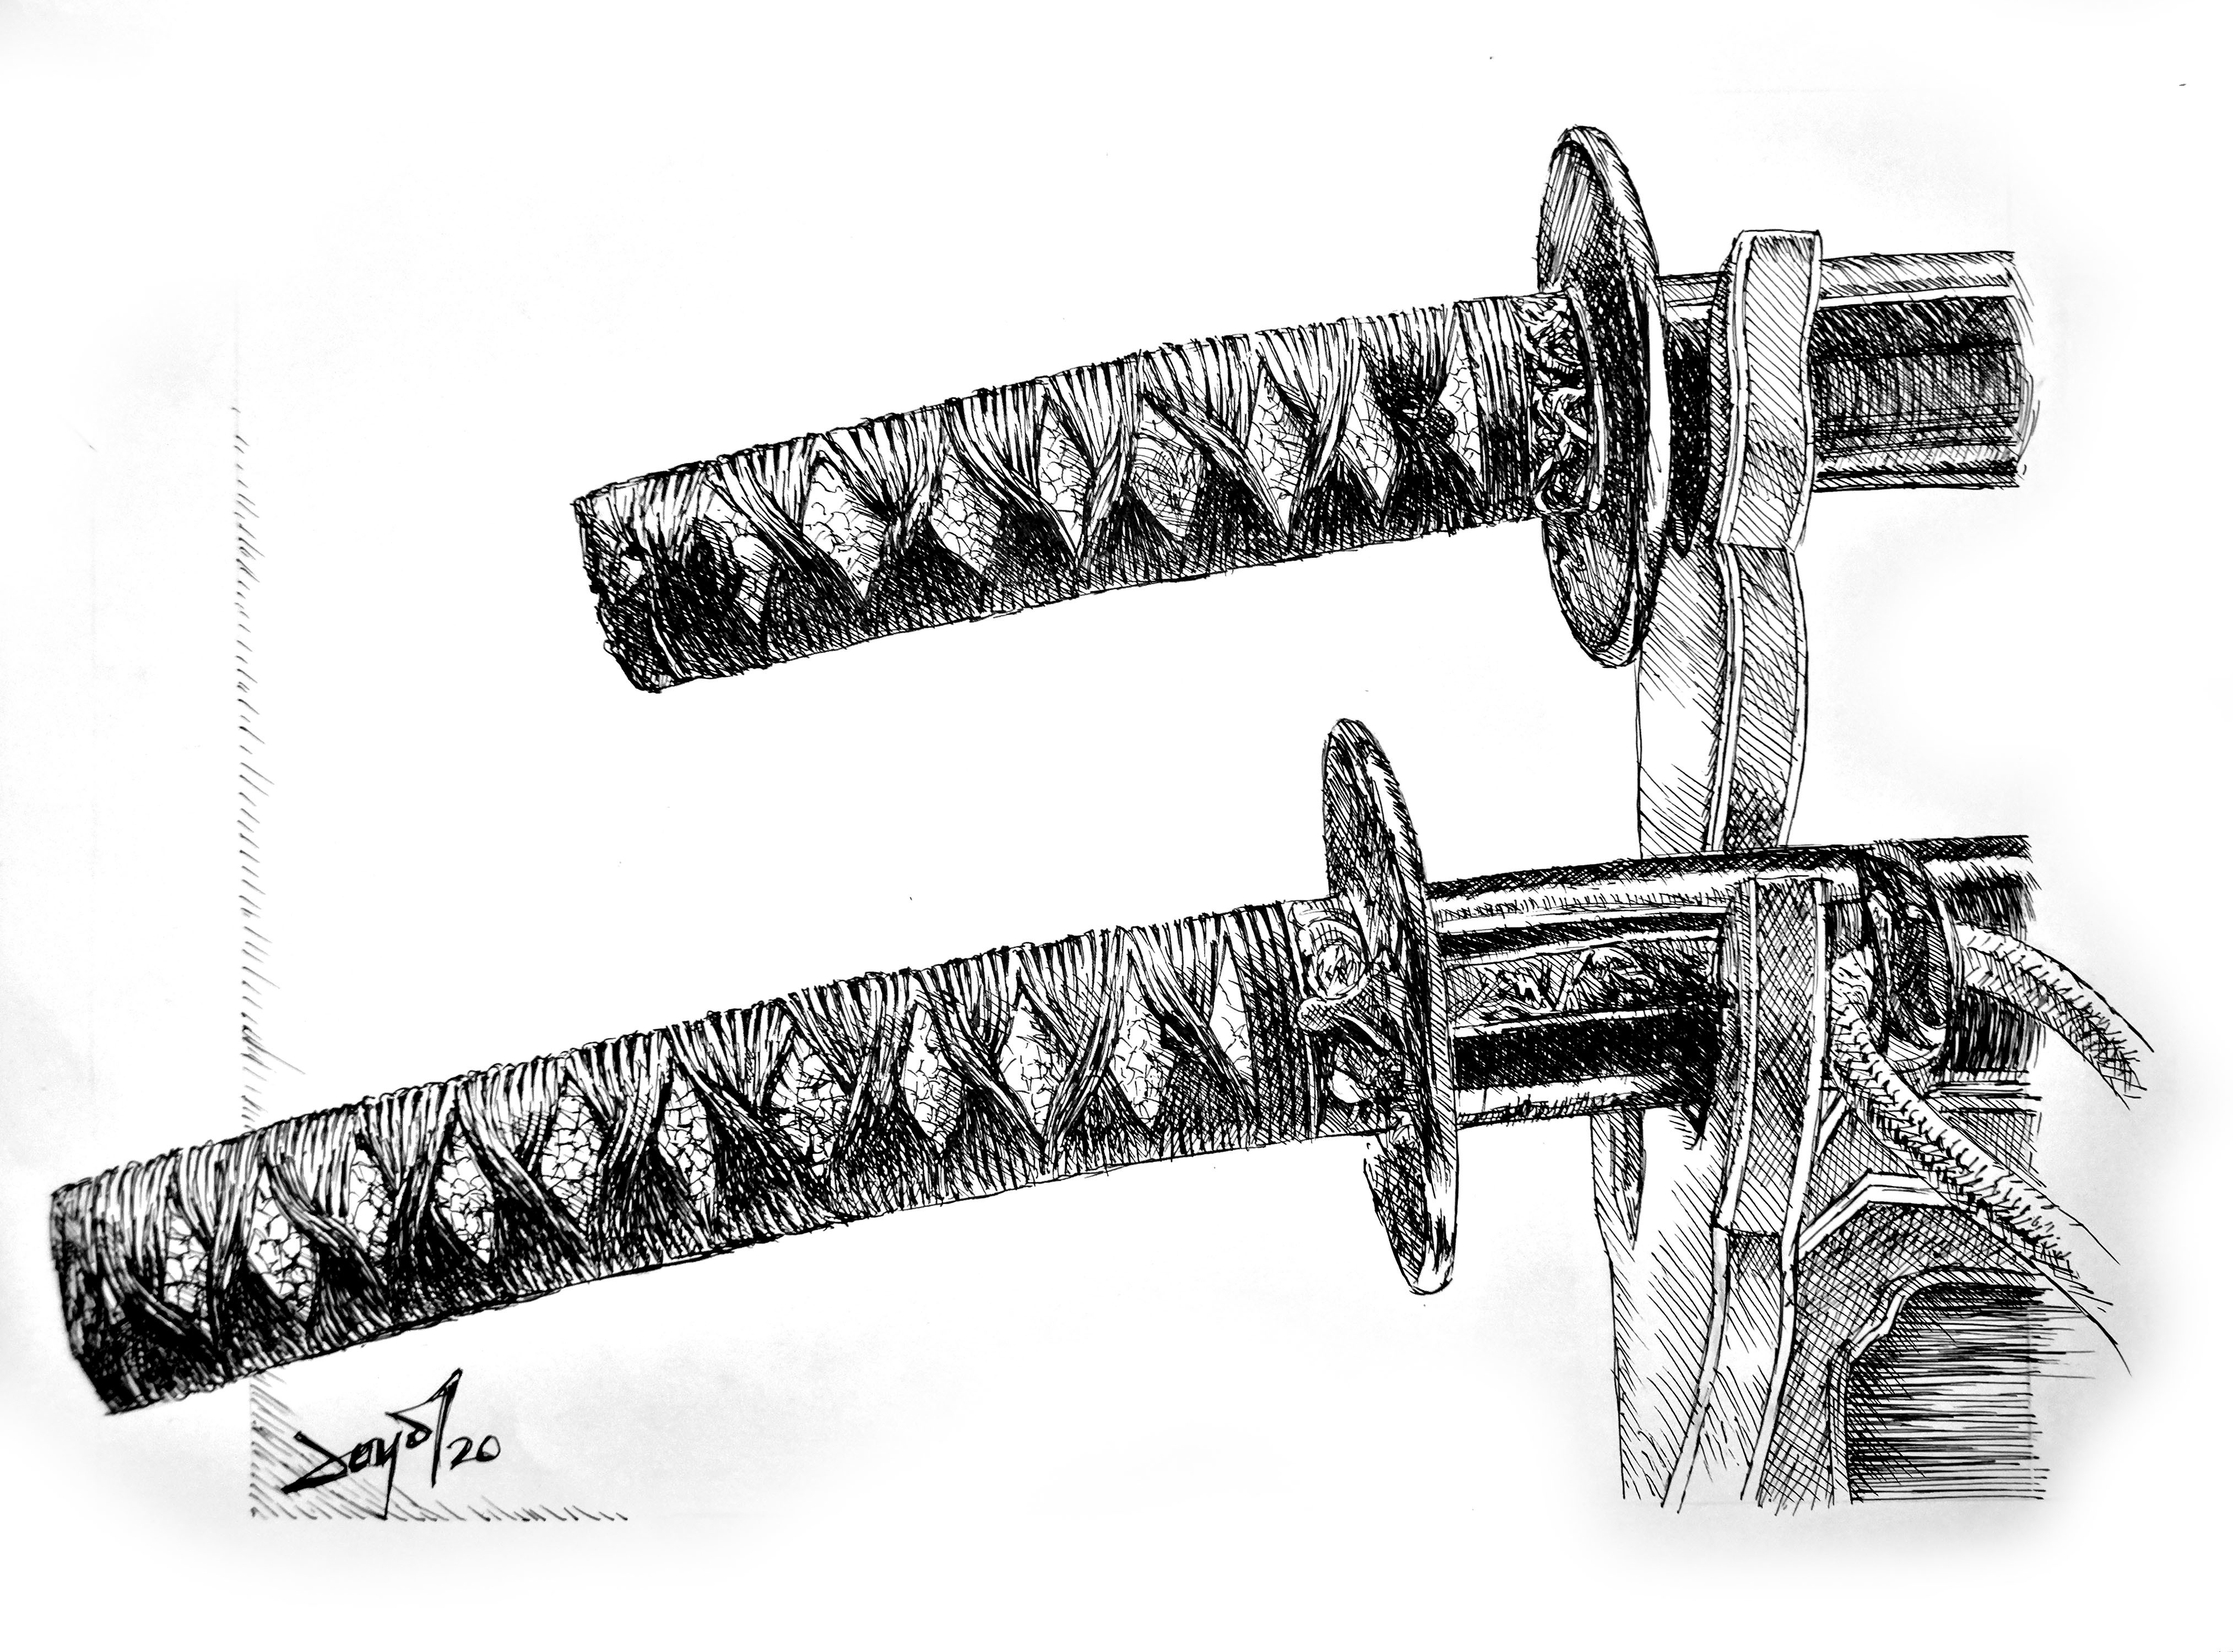 Детские деревянные мечи